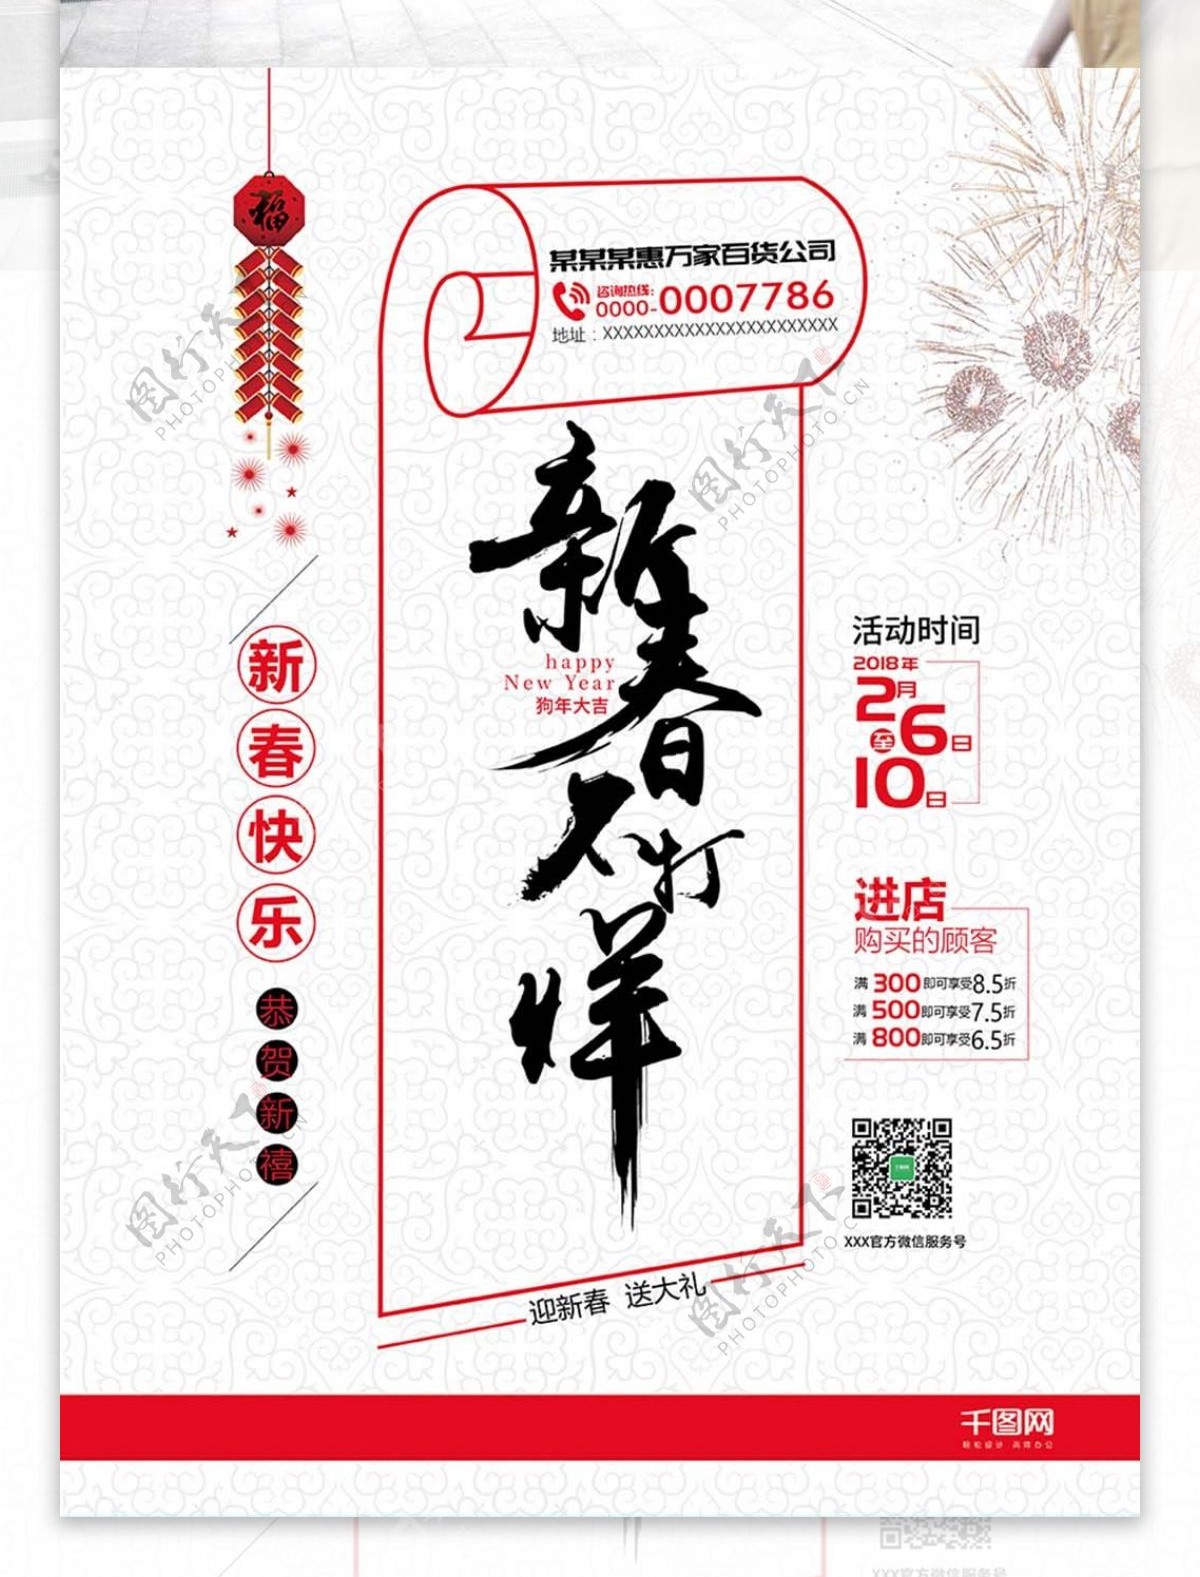 平面广告创意版式设计毛笔字体春节促销新春不打烊清新简约海报